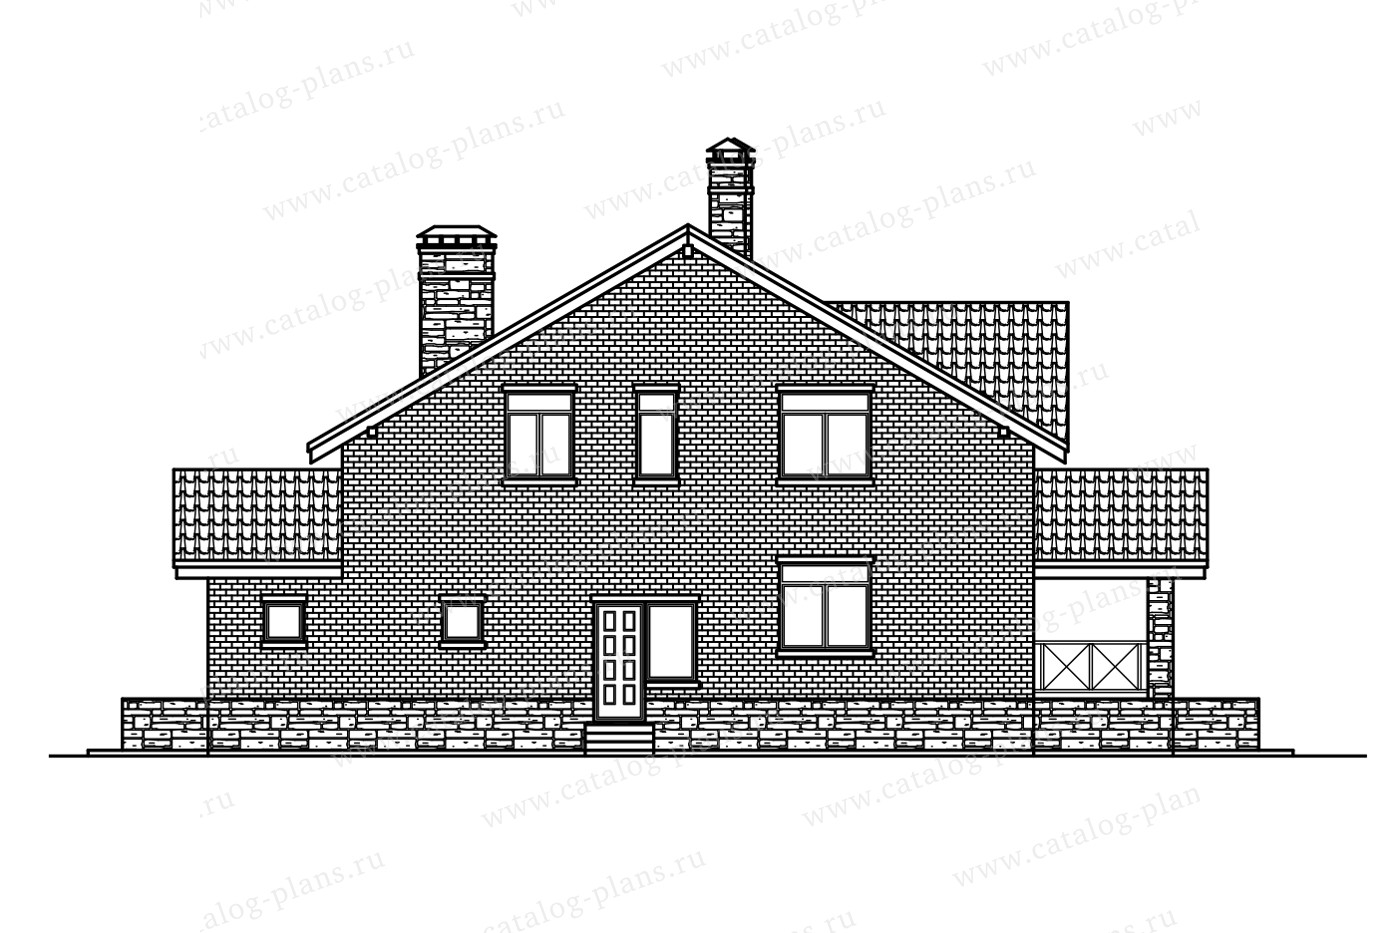 Проект 57-09AL, жилой дом, материал - газобетонные блоки 400, количество этажей - 2, архитектурный стиль - скандинавский, фундамент - монолитный ленточный ж/б